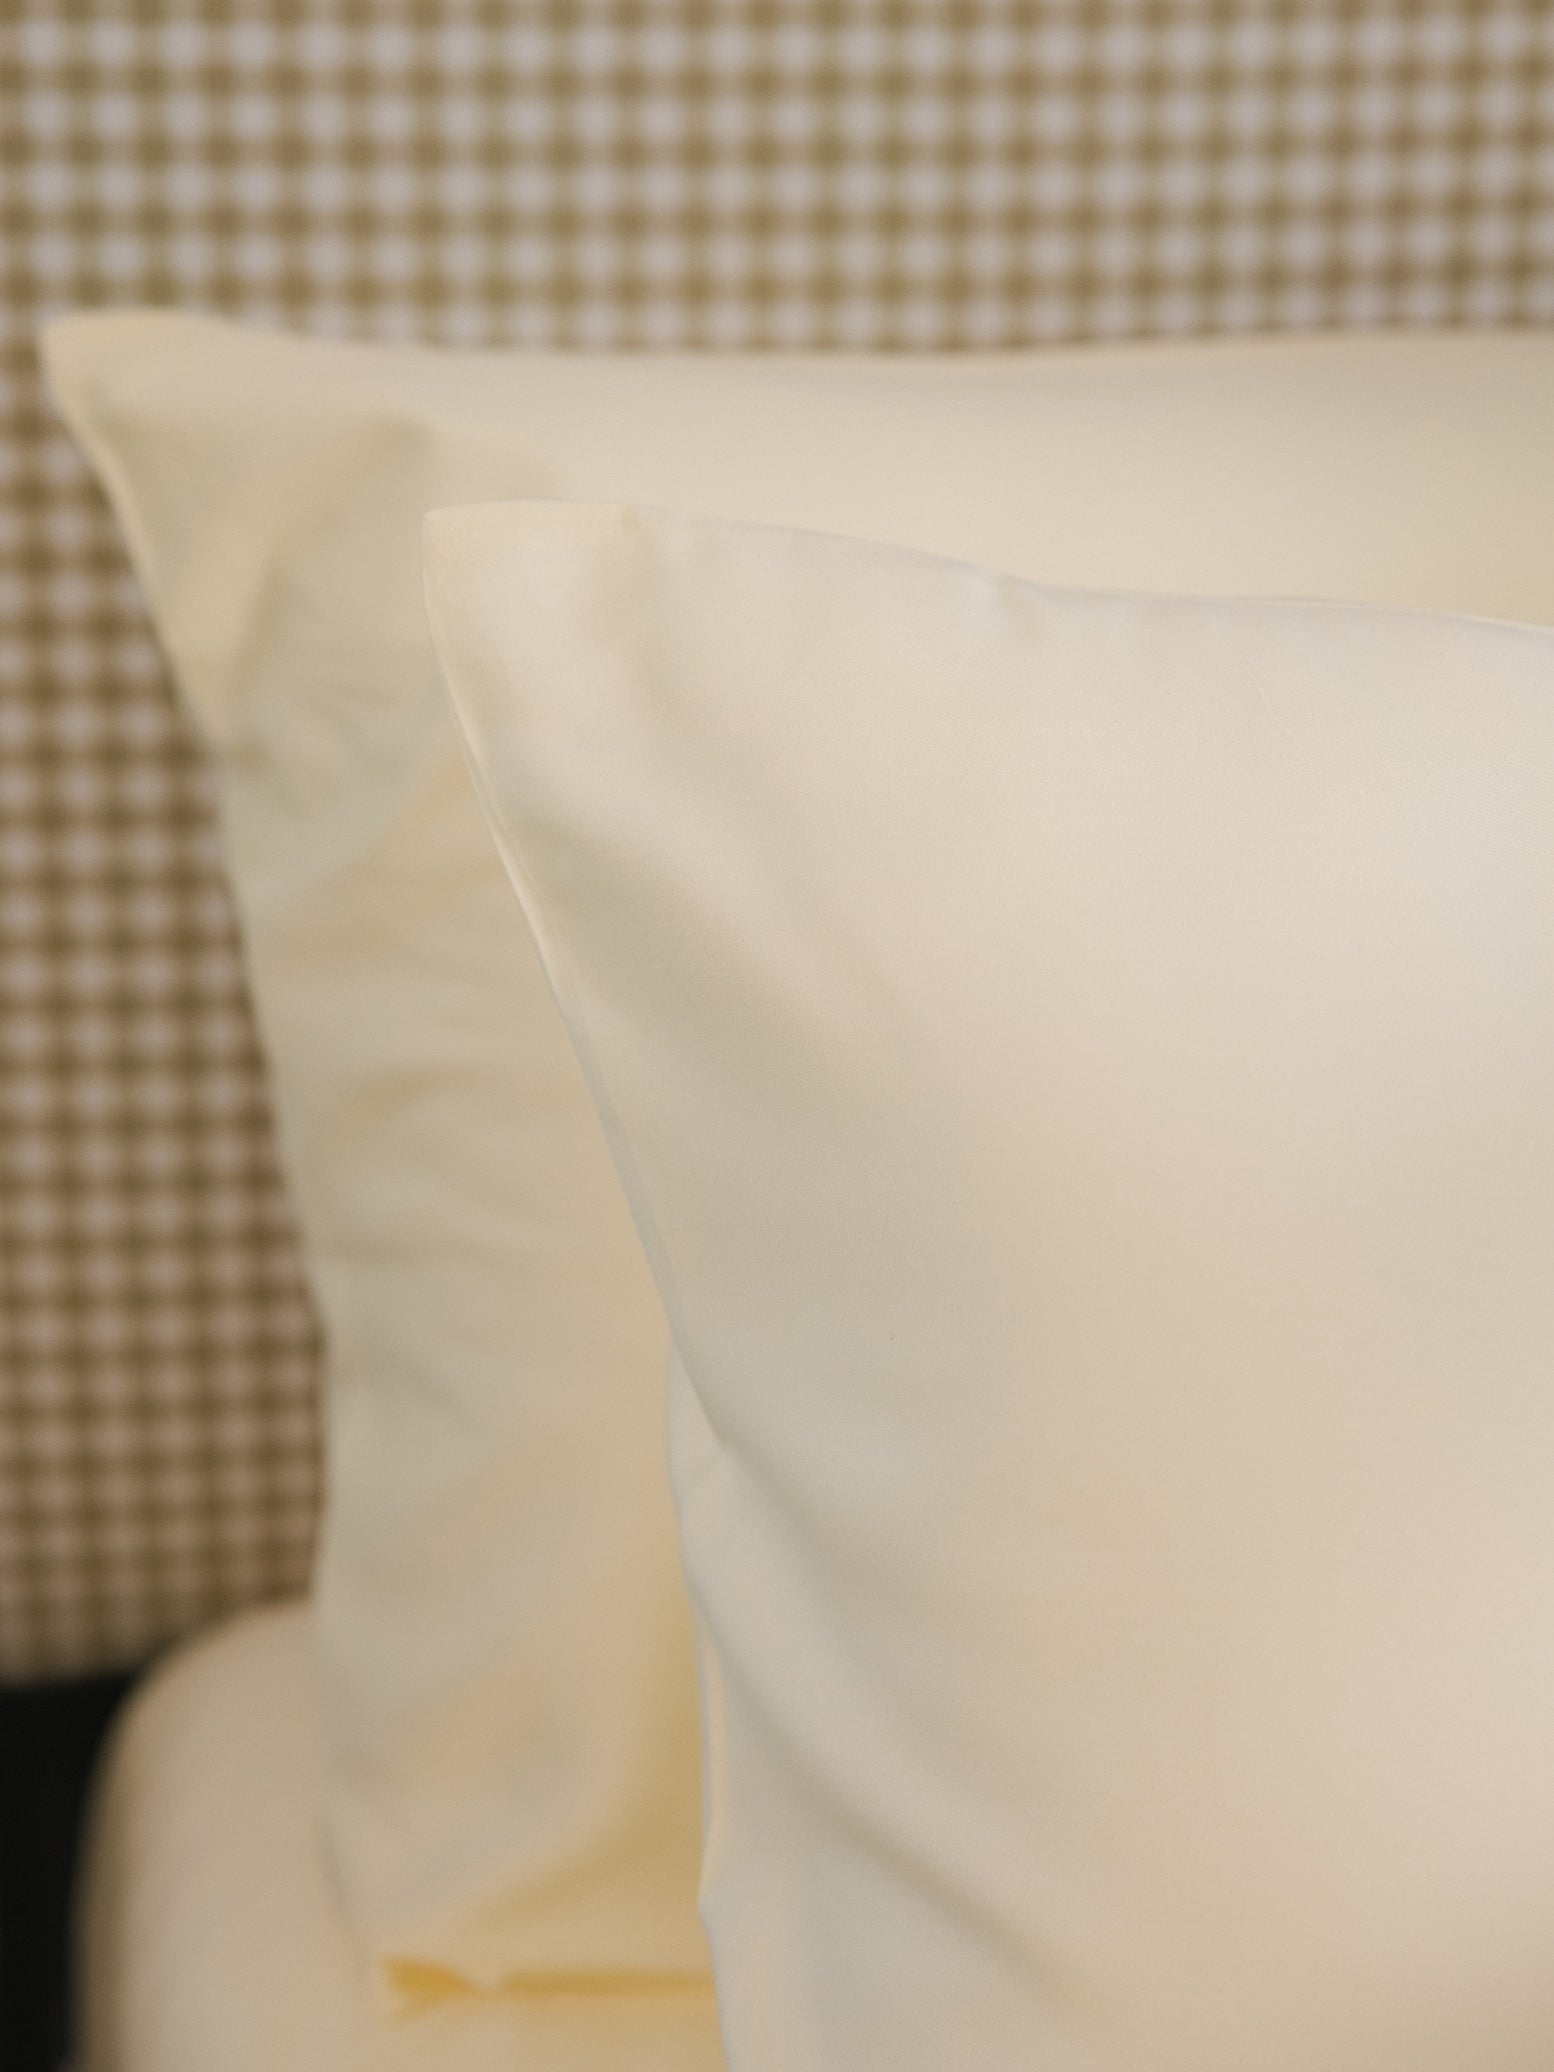 Lemonade Pillowcases on bed standard/king. 